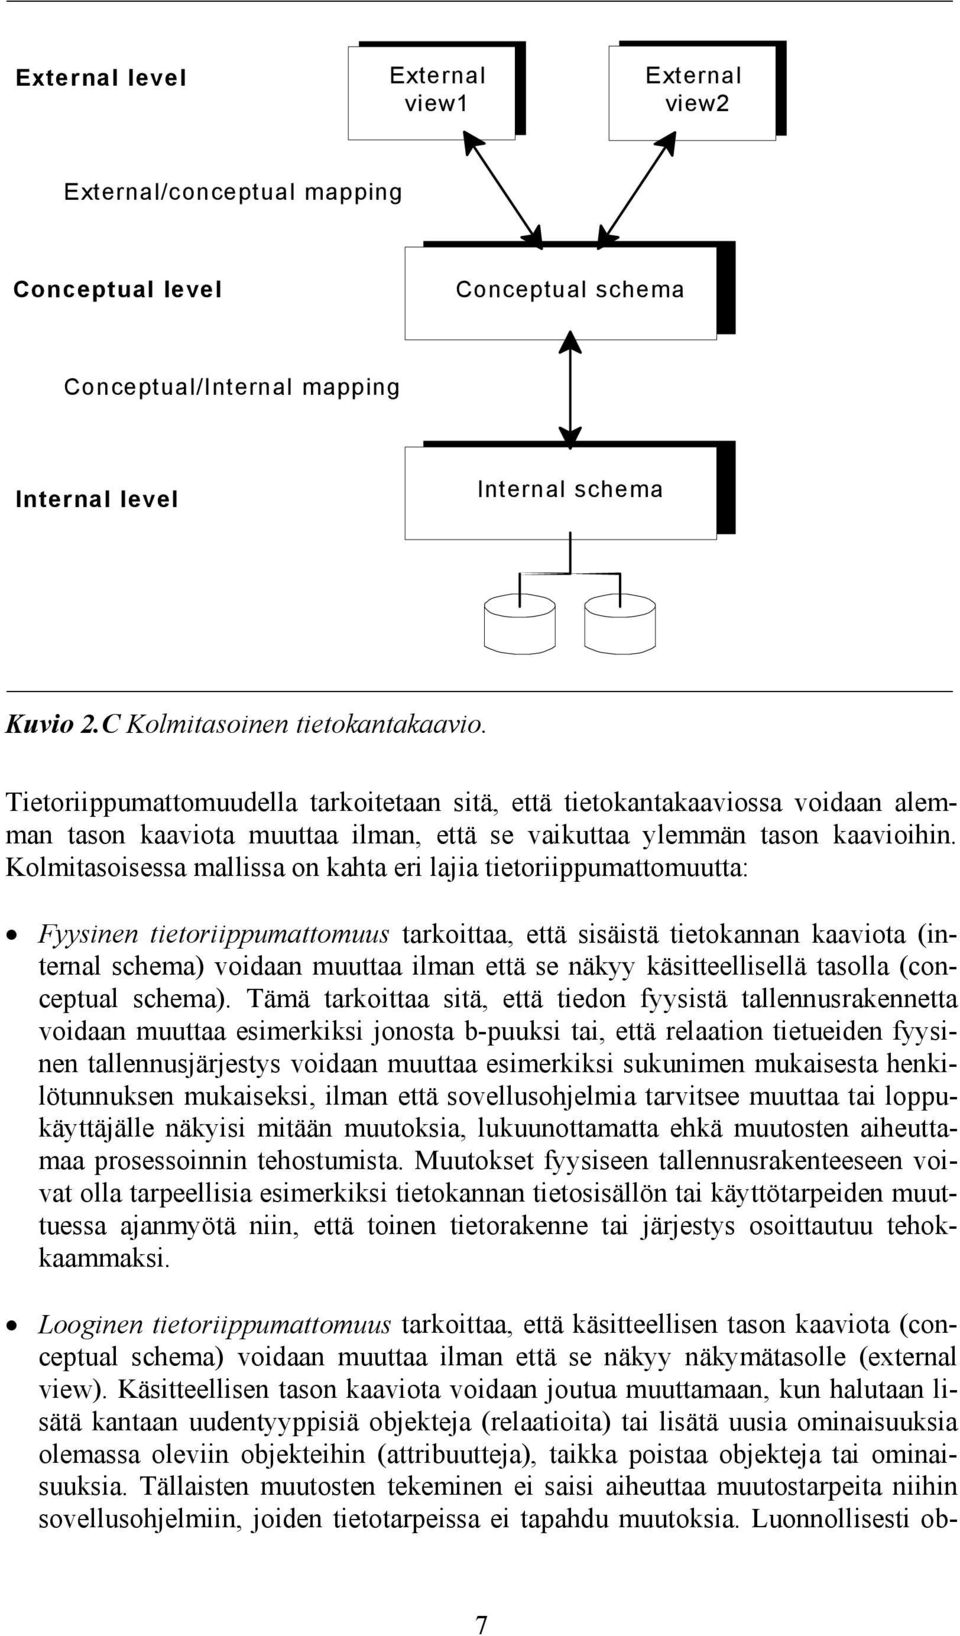 Kolmitasoisessa mallissa on kahta eri lajia tietoriippumattomuutta: Fyysinen tietoriippumattomuus tarkoittaa, että sisäistä tietokannan kaaviota (internal schema) voidaan muuttaa ilman että se näkyy